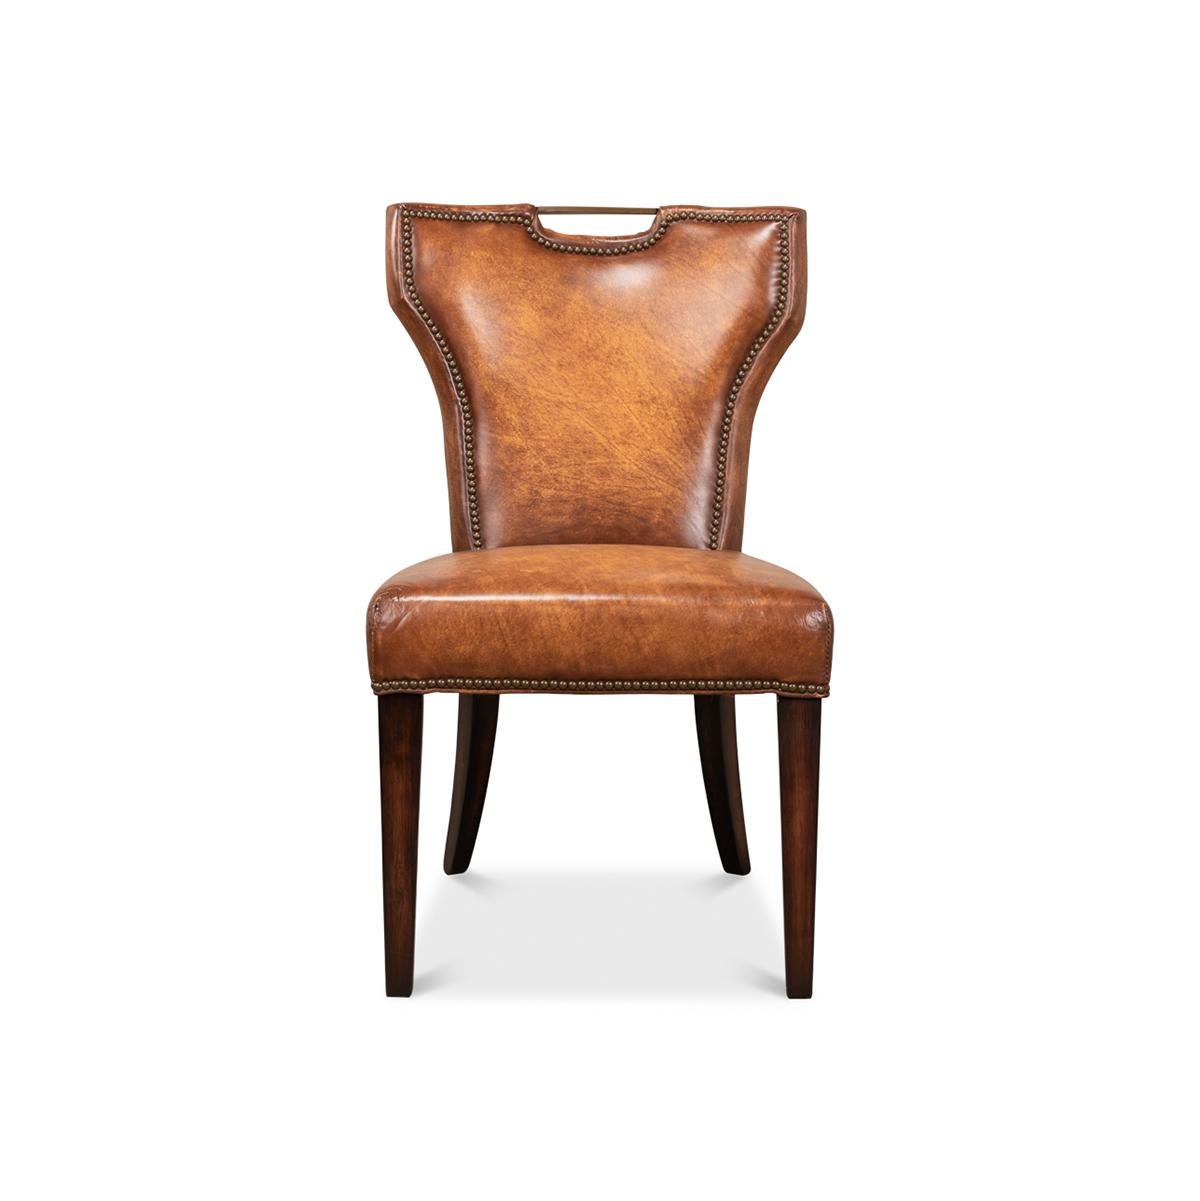 Ein Meisterwerk, das einen Hauch von Eleganz und Raffinesse in Ihr Esserlebnis bringt. Dieser Stuhl ist eine harmonische Mischung aus klassischem Design und moderner Handwerkskunst. Er verfügt über eine Rückenlehne mit einem exquisiten,